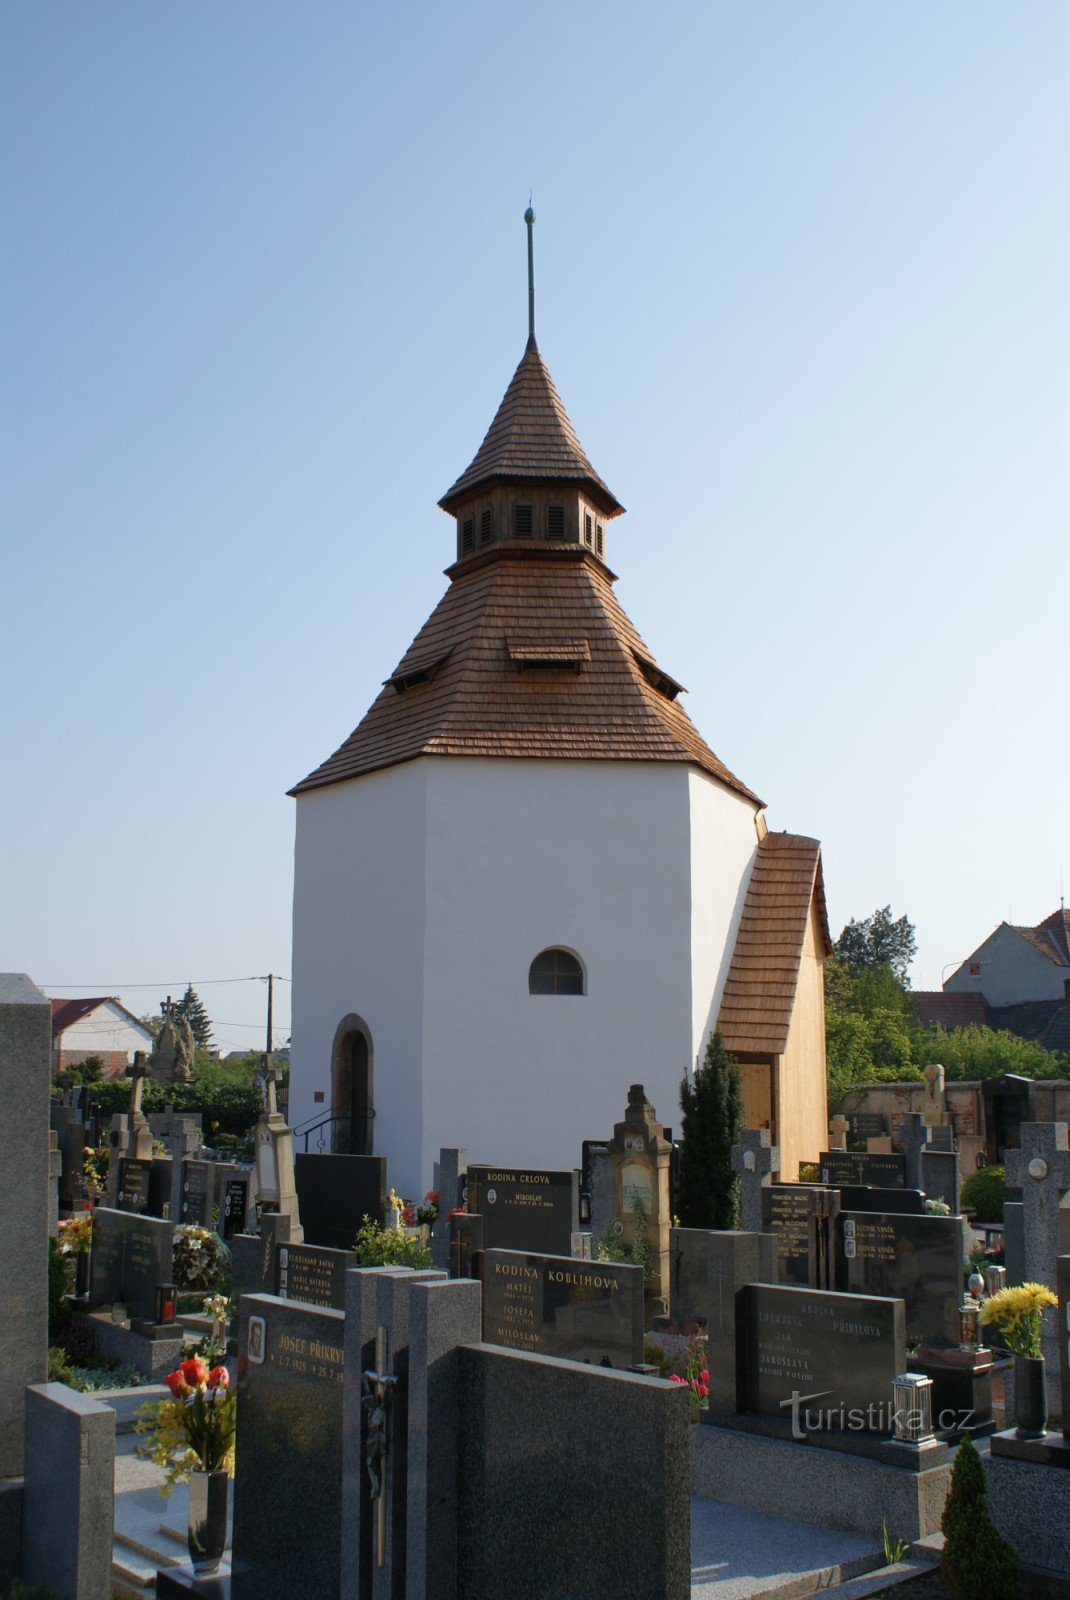 Staré Město près de Uh. Hradiště – zone du cimetière avec l'église de St. Archange Michel